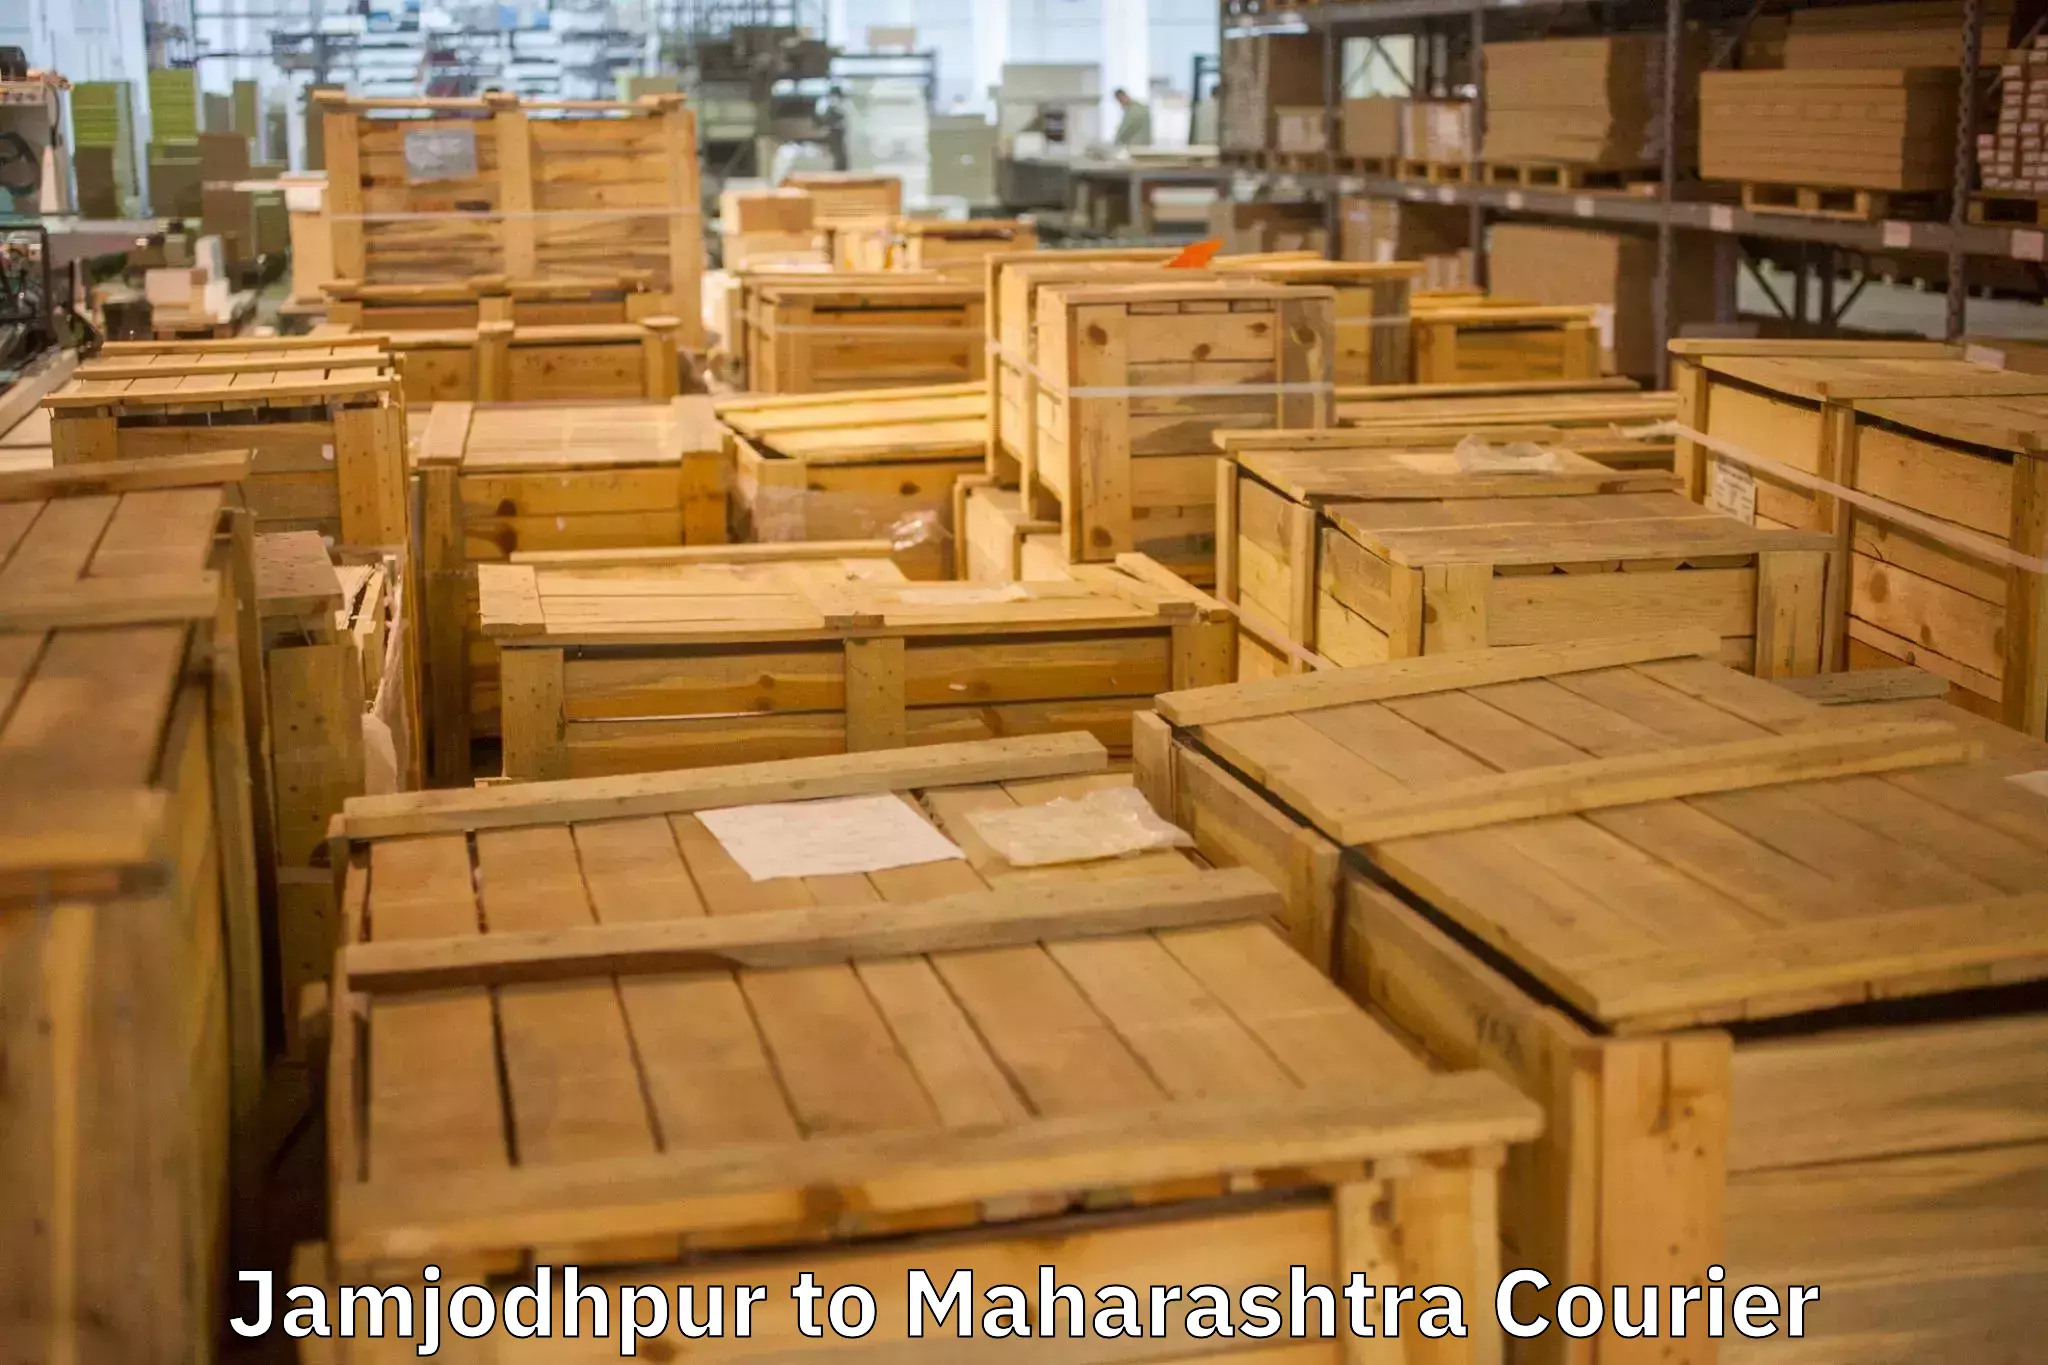 Furniture transport specialists in Jamjodhpur to Mahim